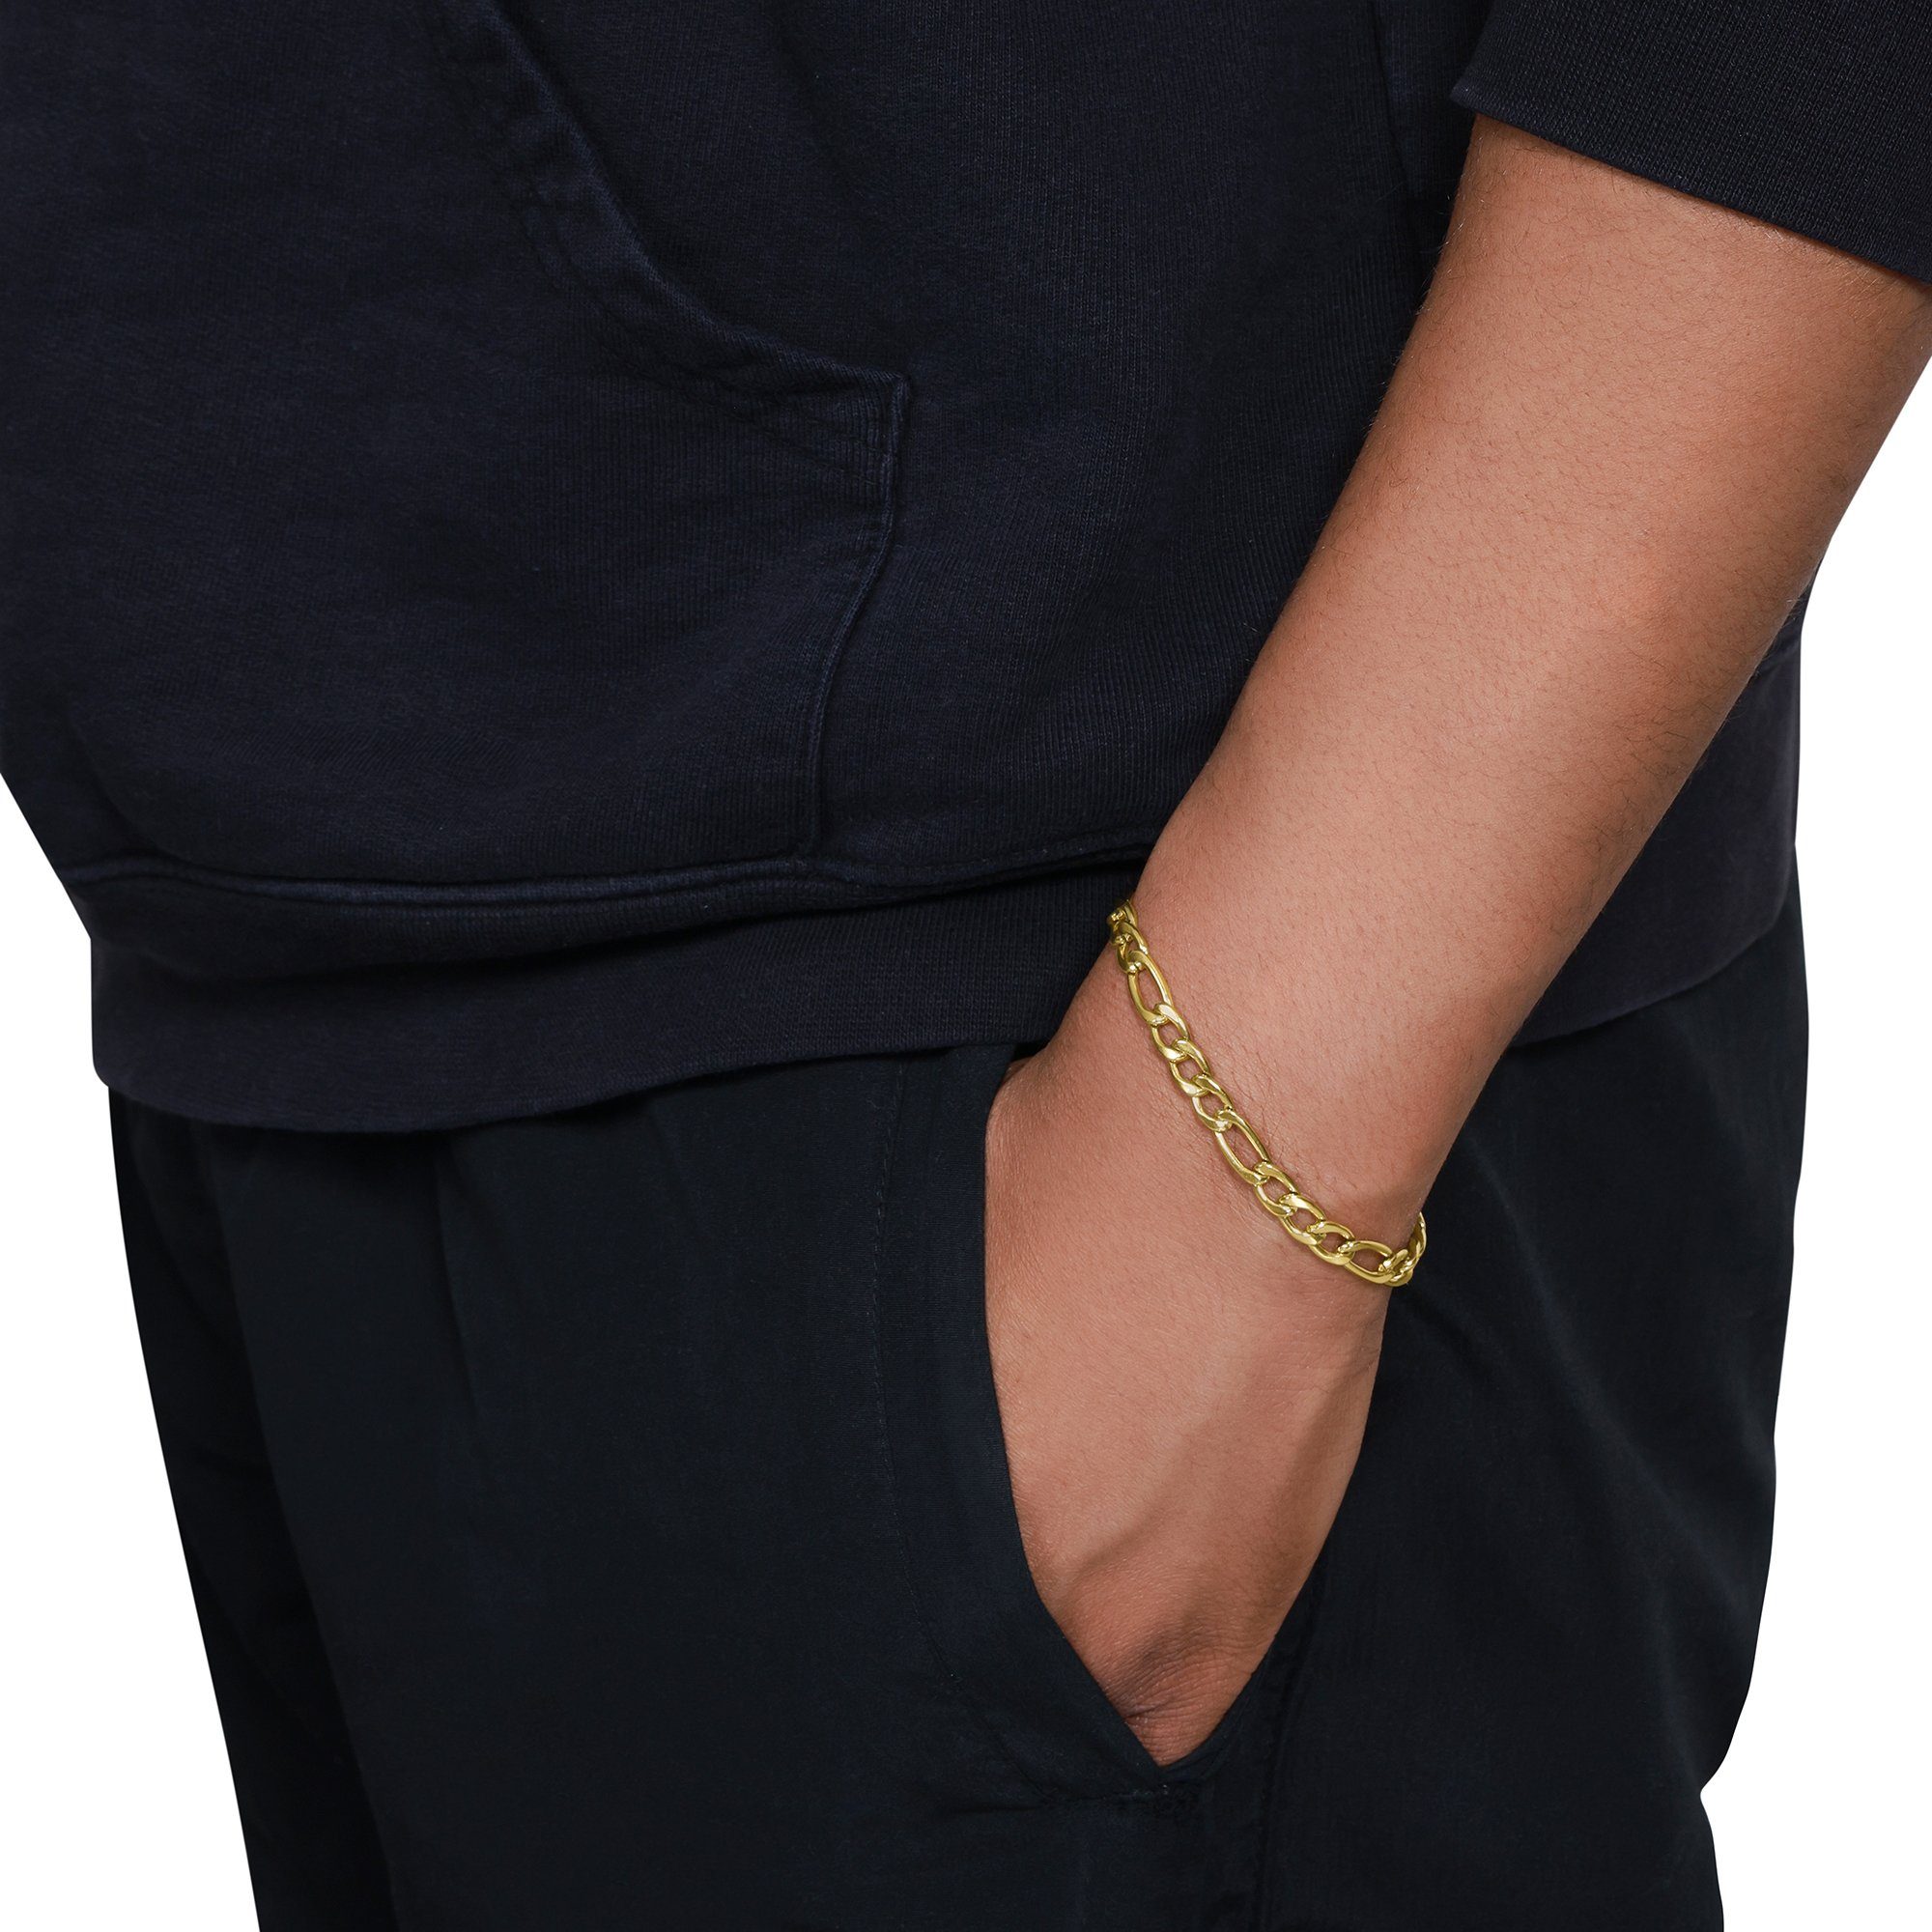 Heideman Armband Janus goldfarben mit inkl. Geschenkverpackung), Armkette (Armband, Verlängerungskette Herren